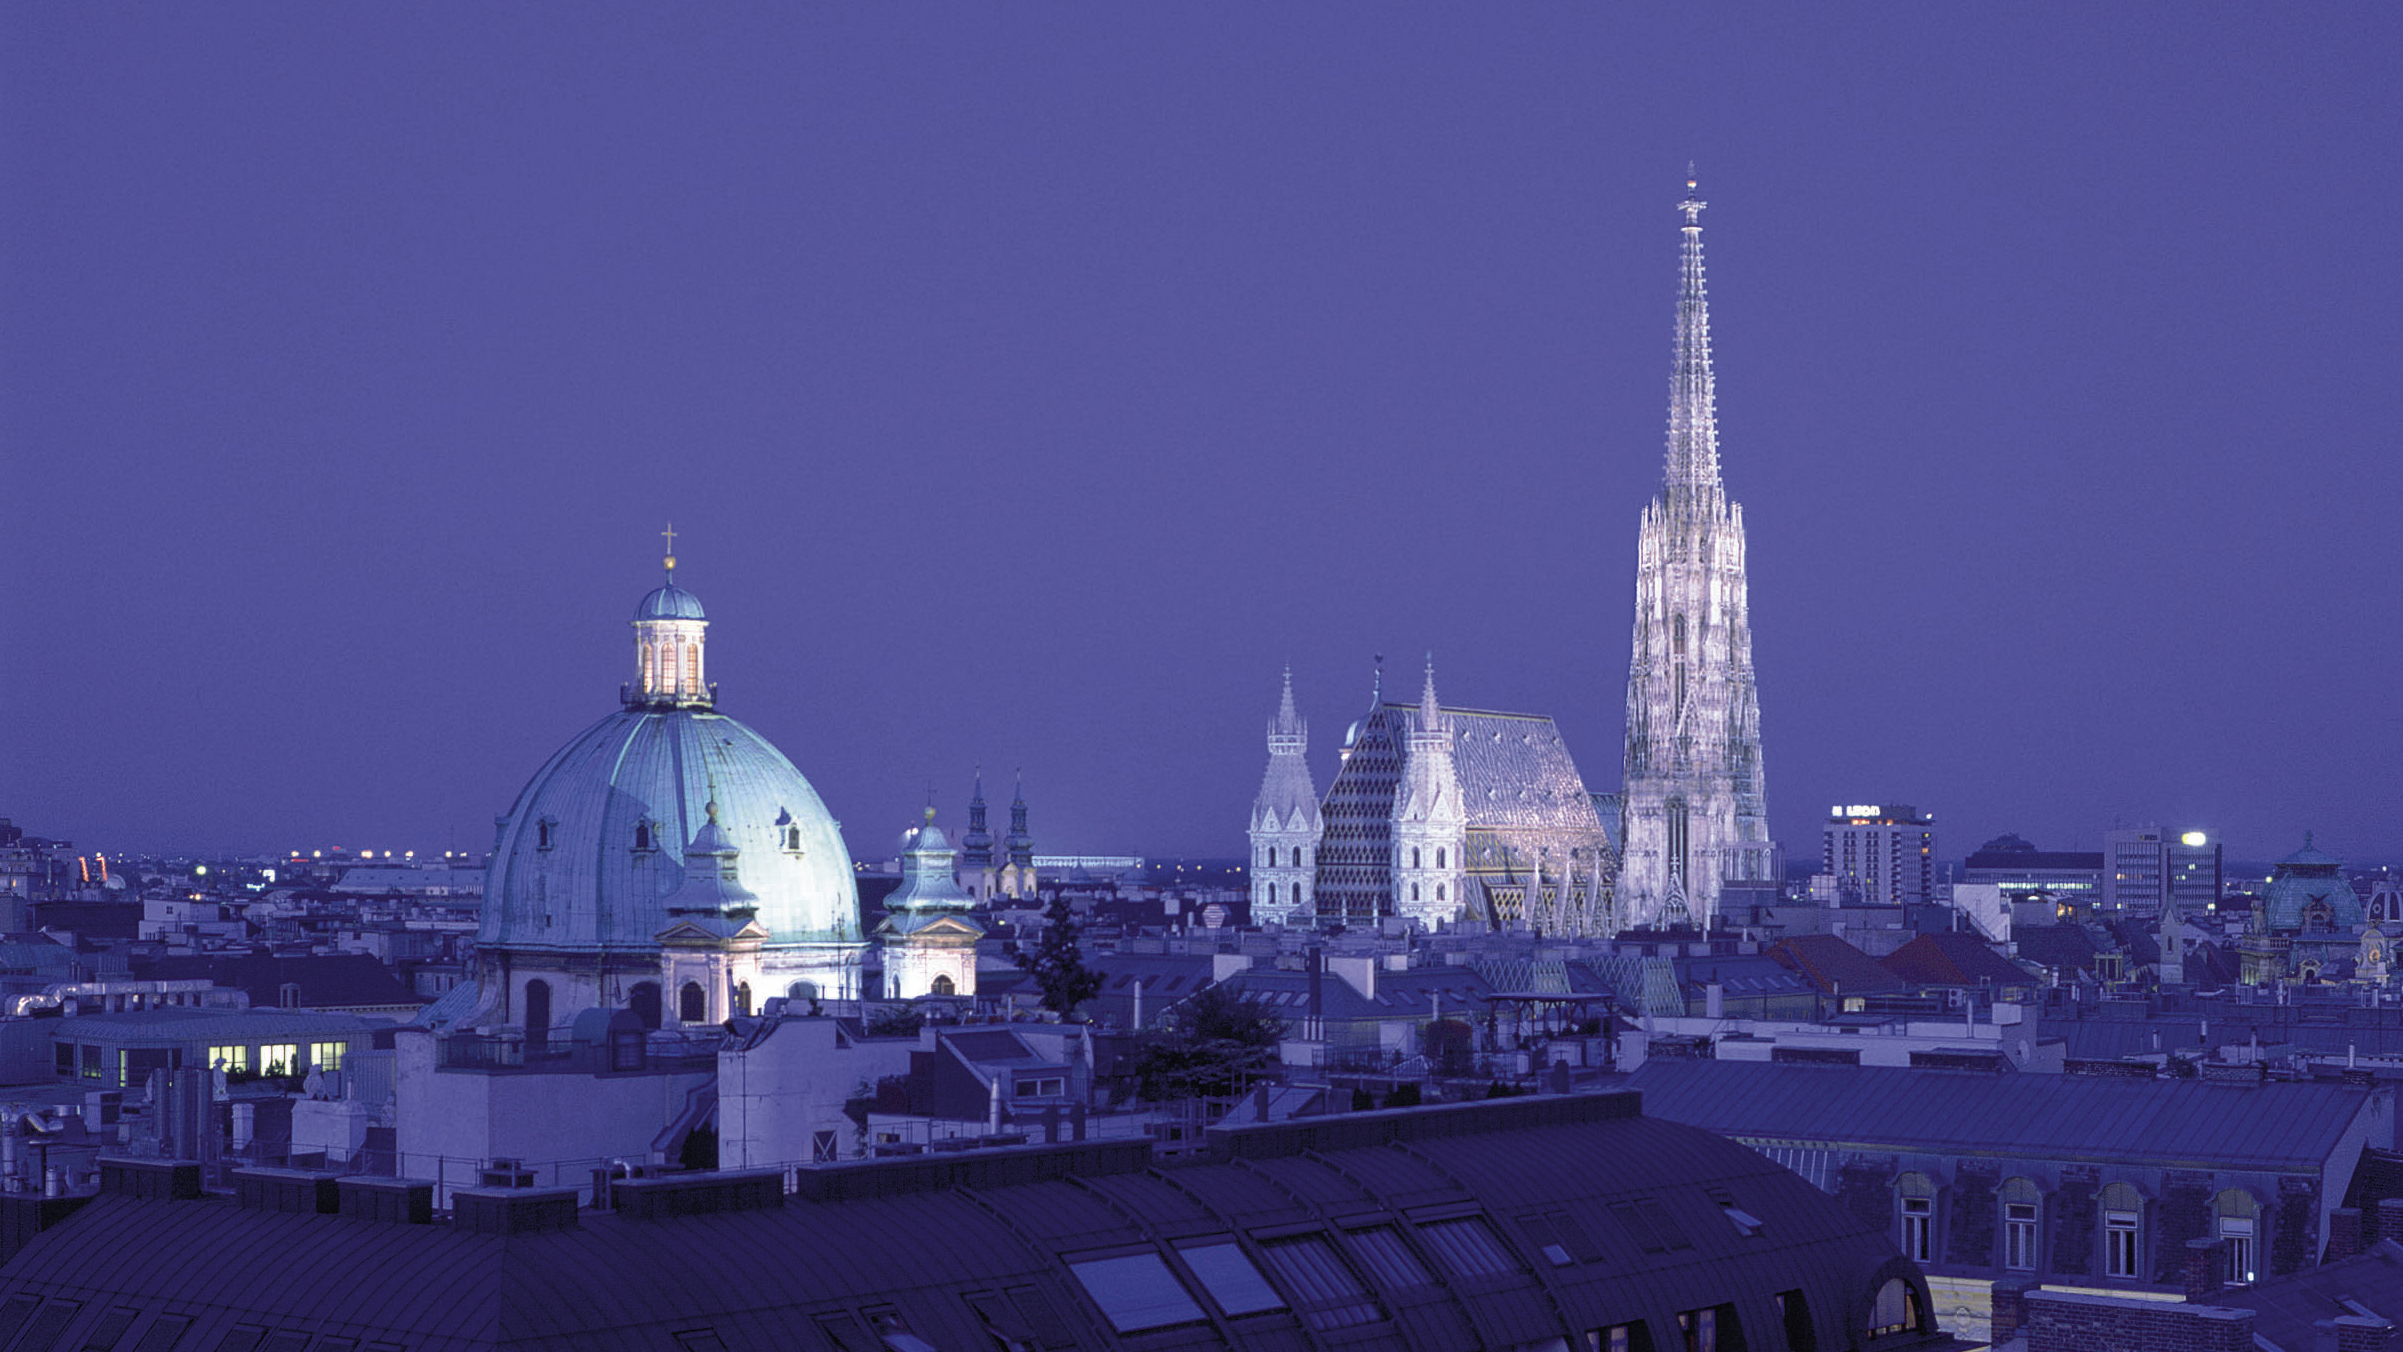 Nachtaufnahme von der beleuchteten Peterskirche und dem Stephansdom.